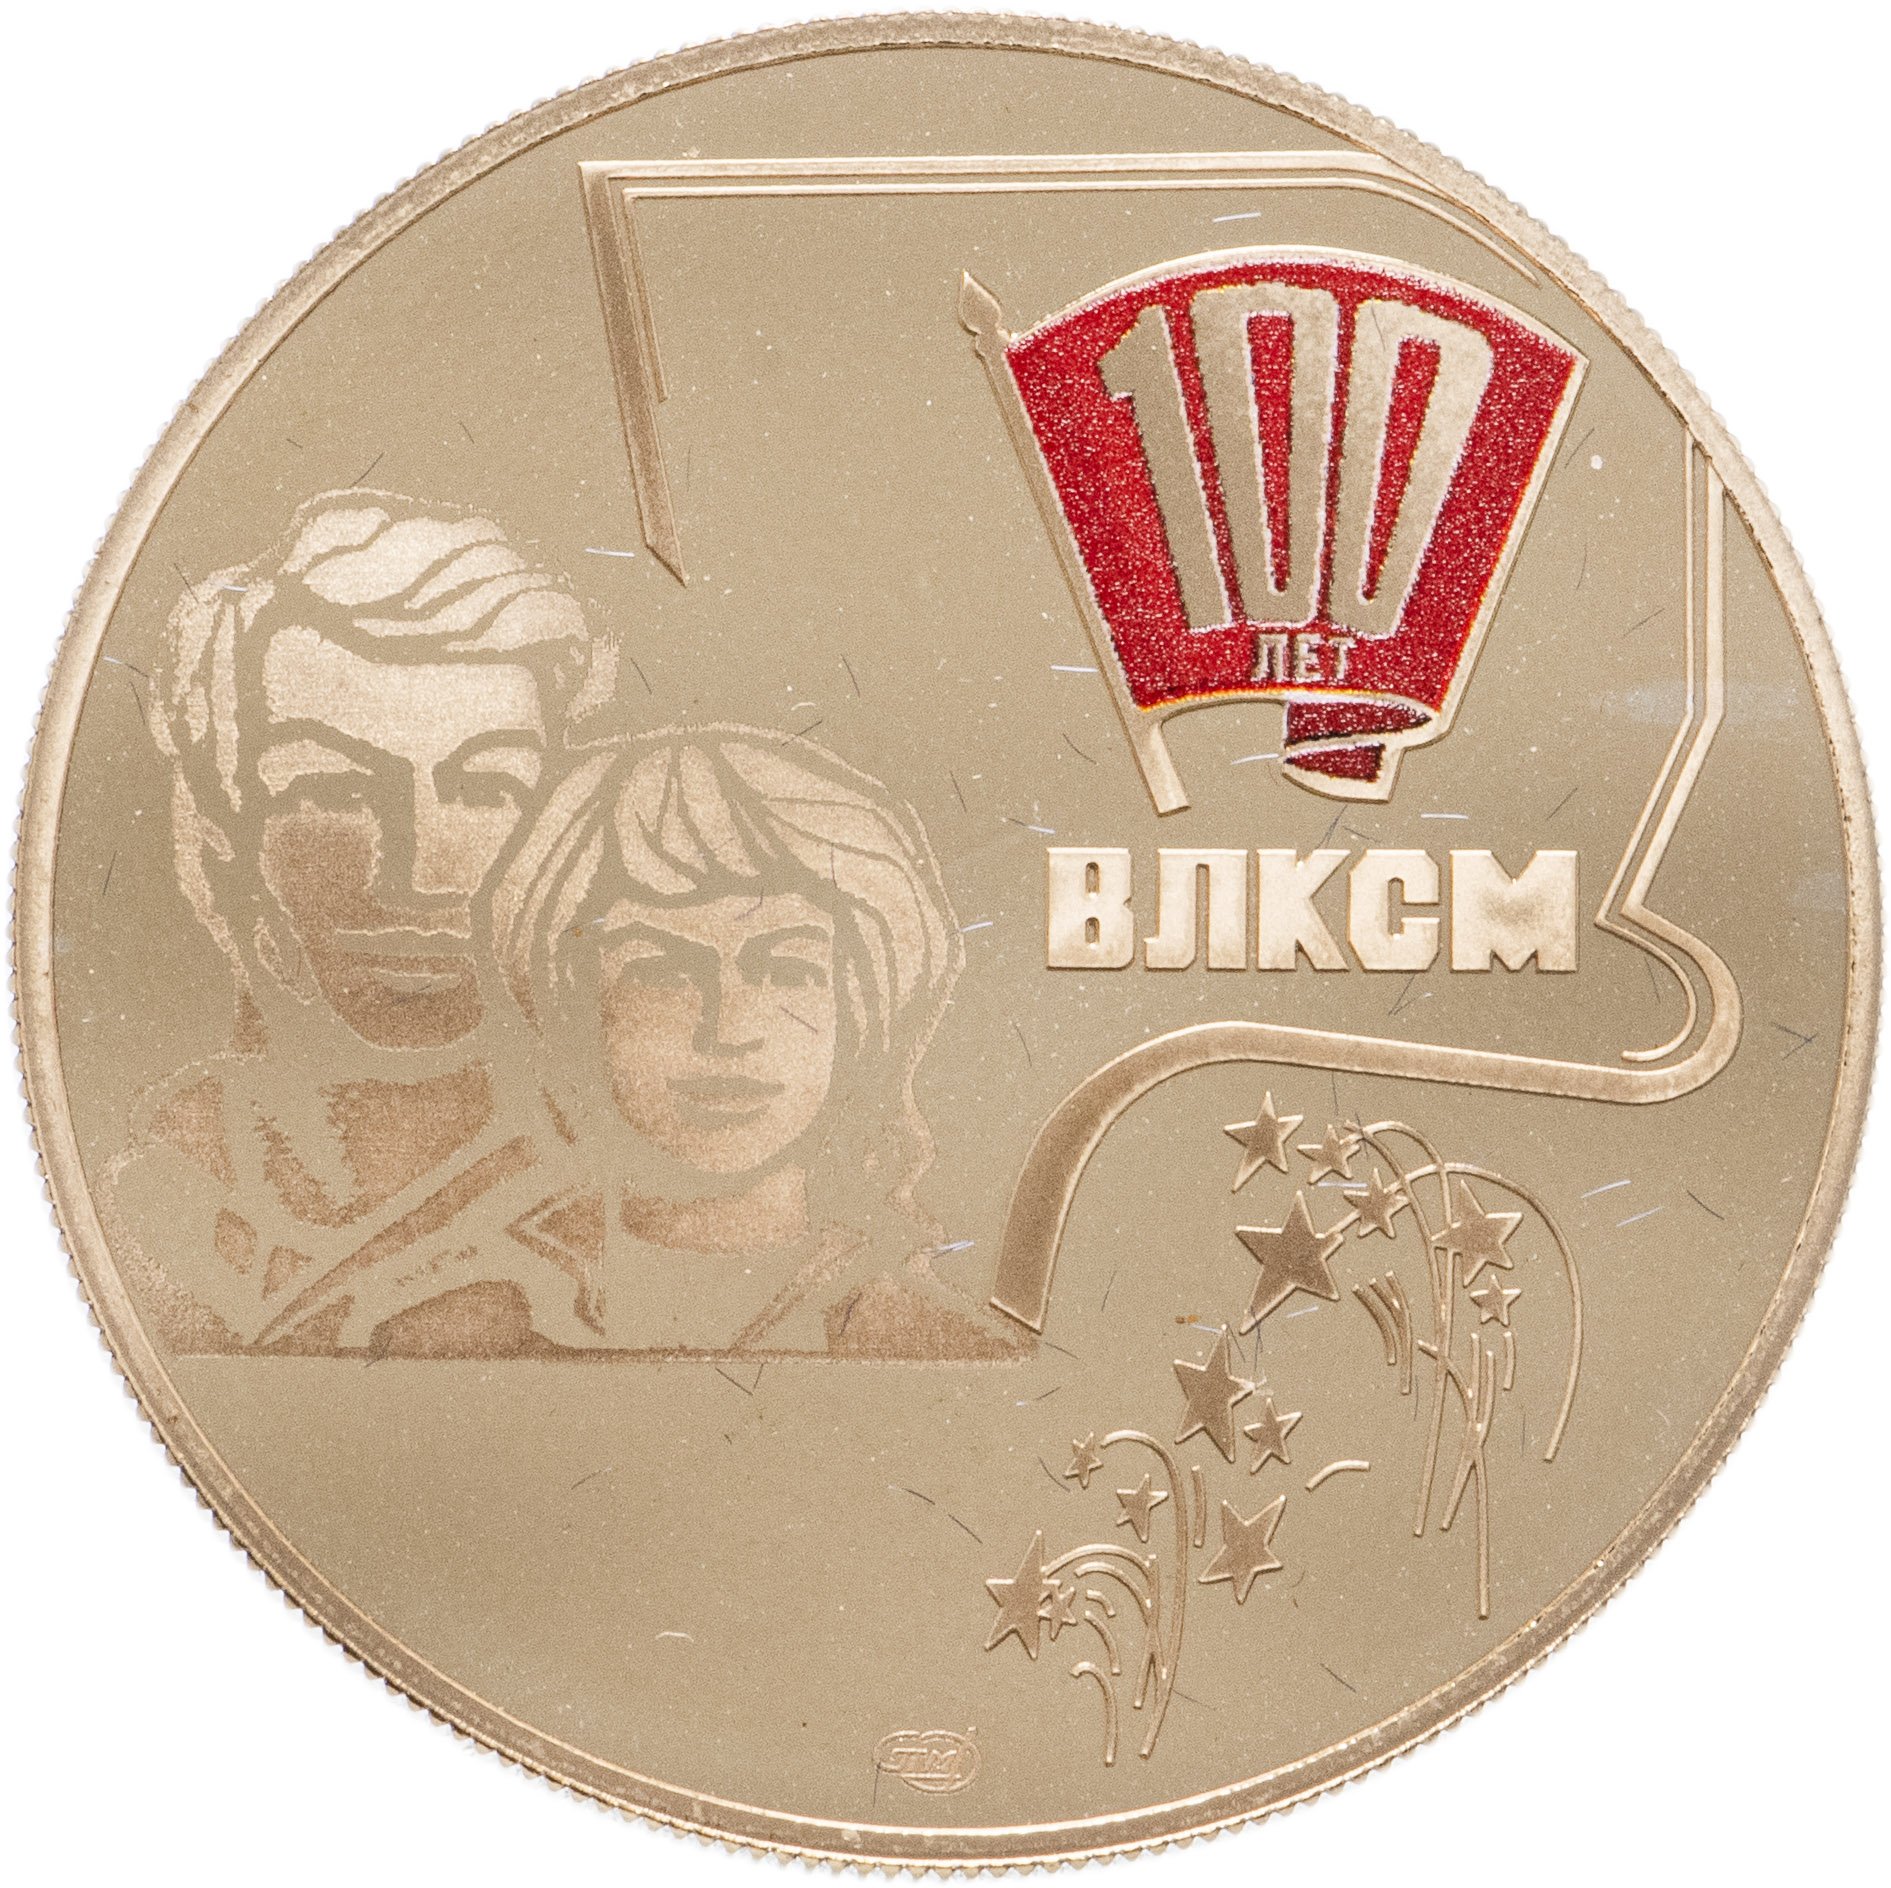 Медаль 100 лет ВЛКСМ